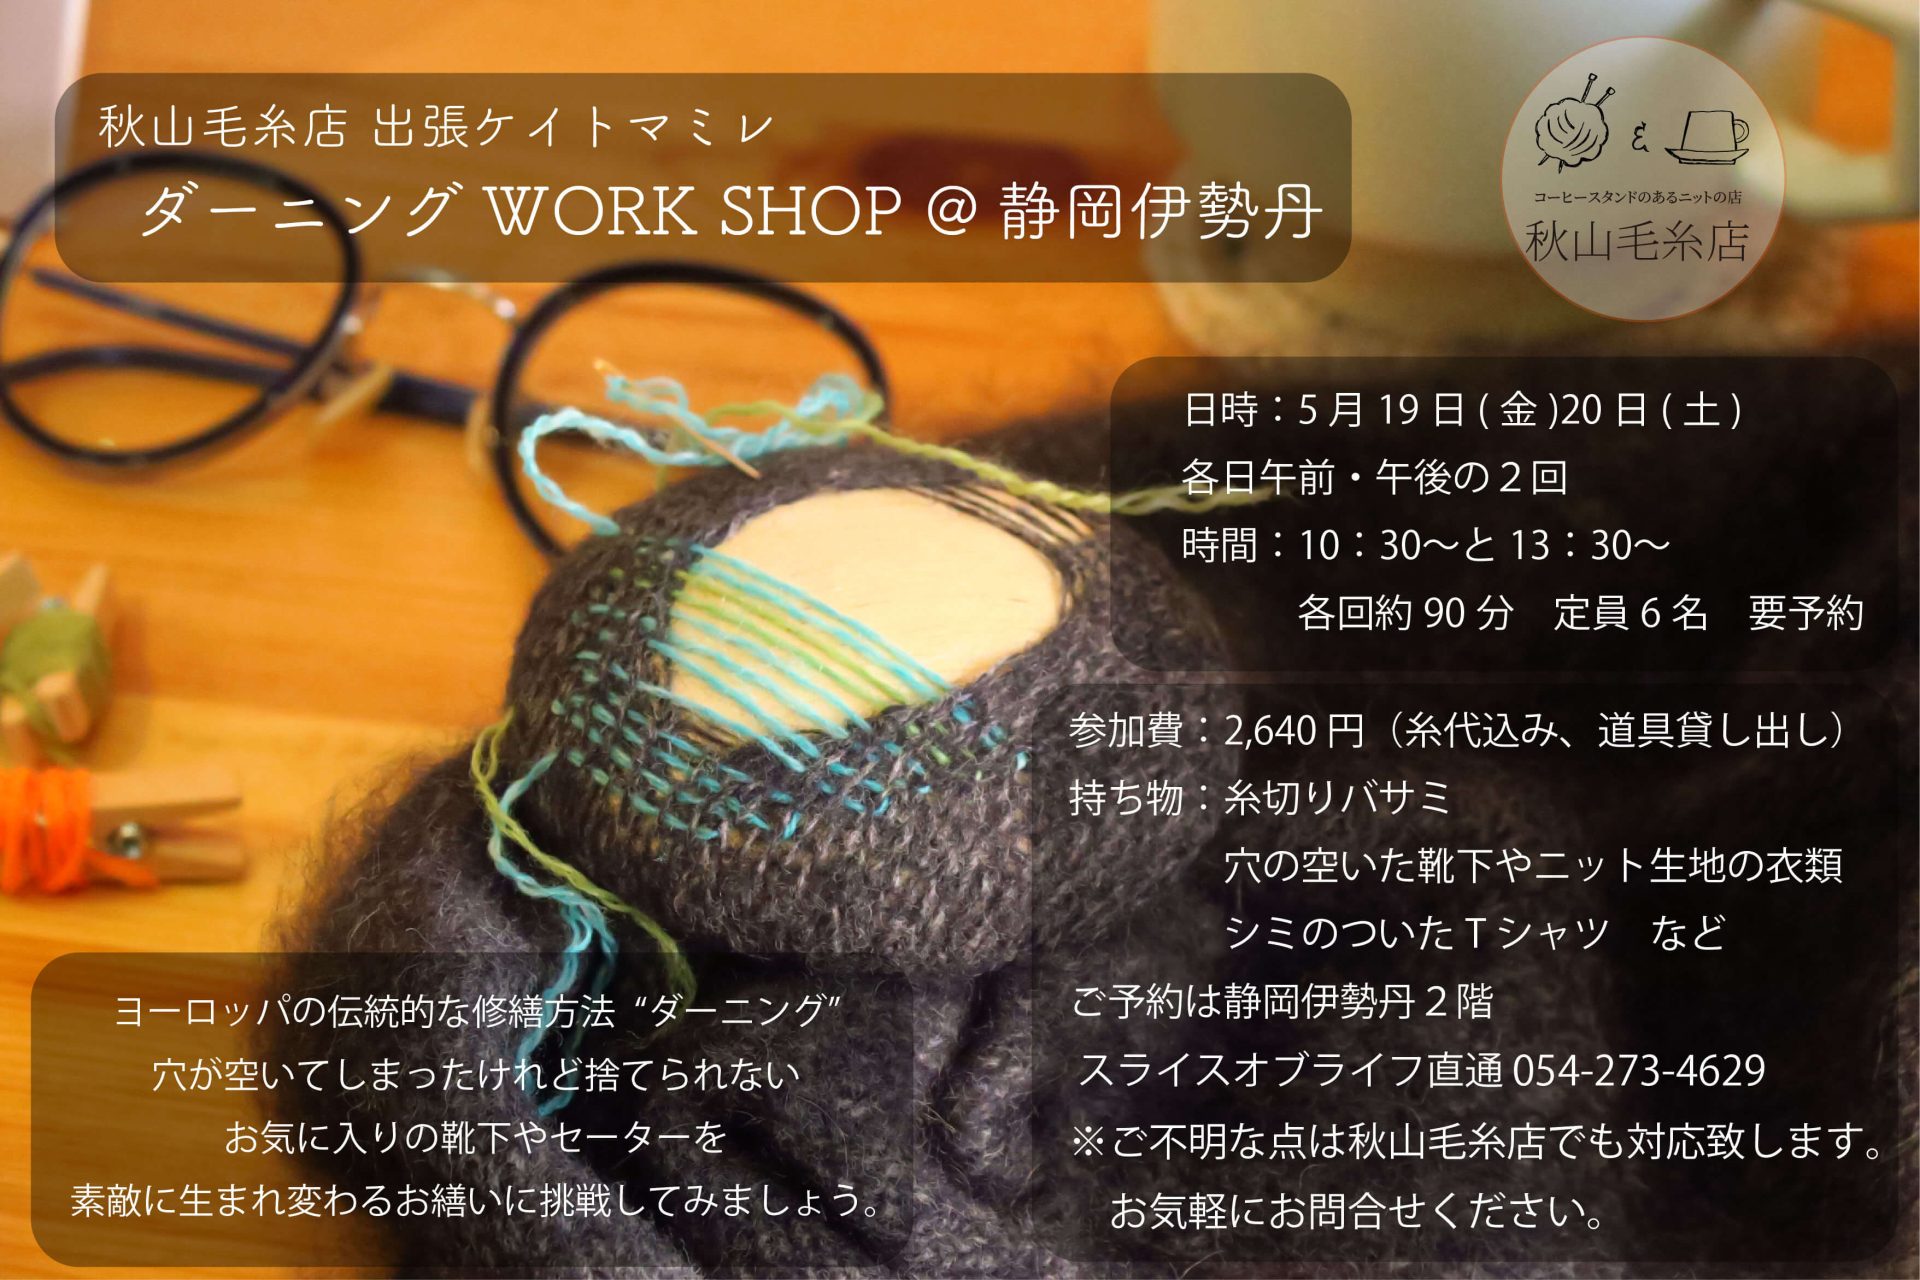 【イベント終了】 静岡伊勢丹にて「ダーニング・WORK SHOP」